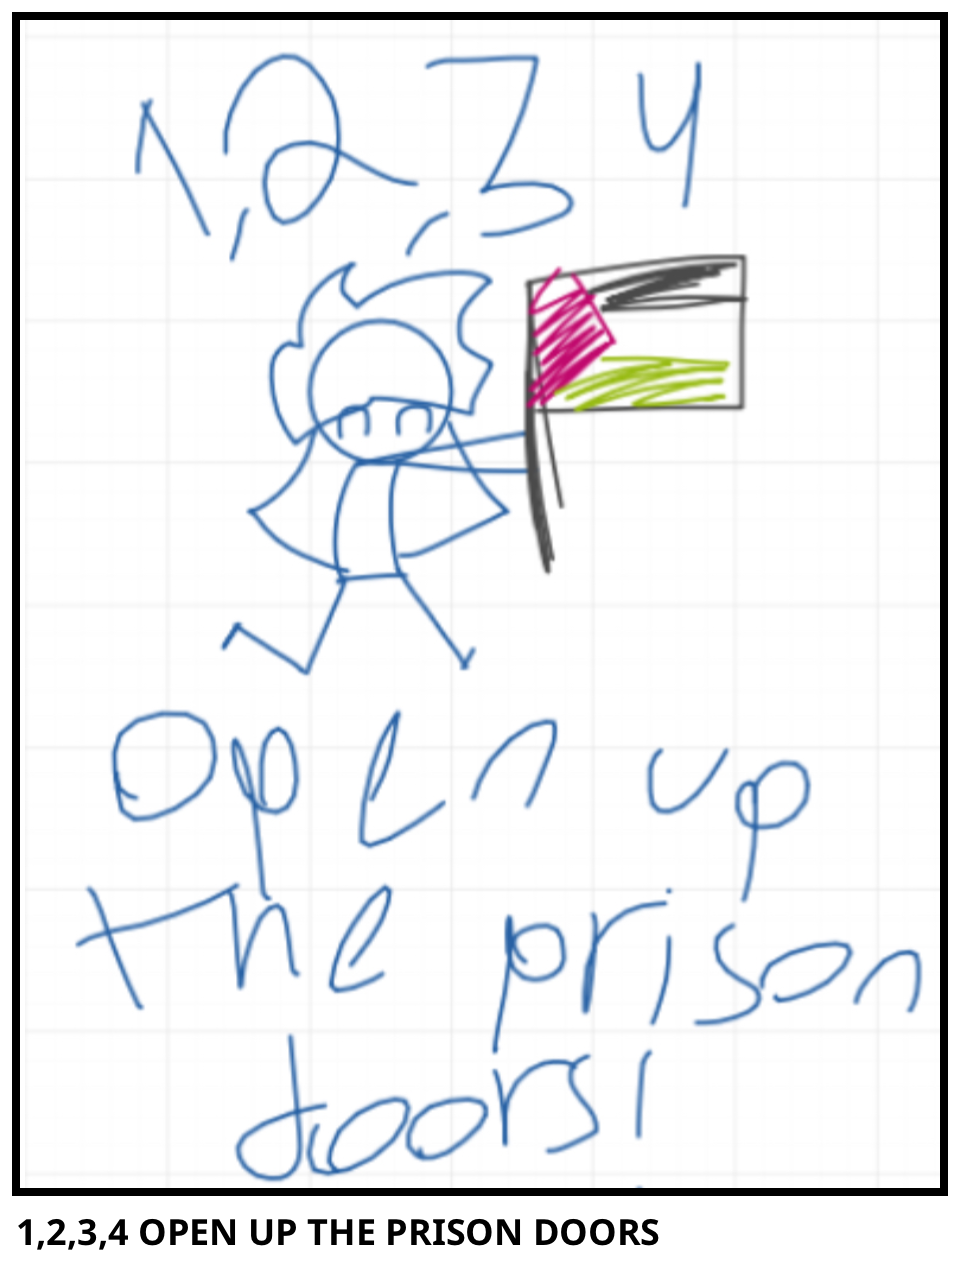 1,2,3,4 OPEN UP THE PRISON DOORS